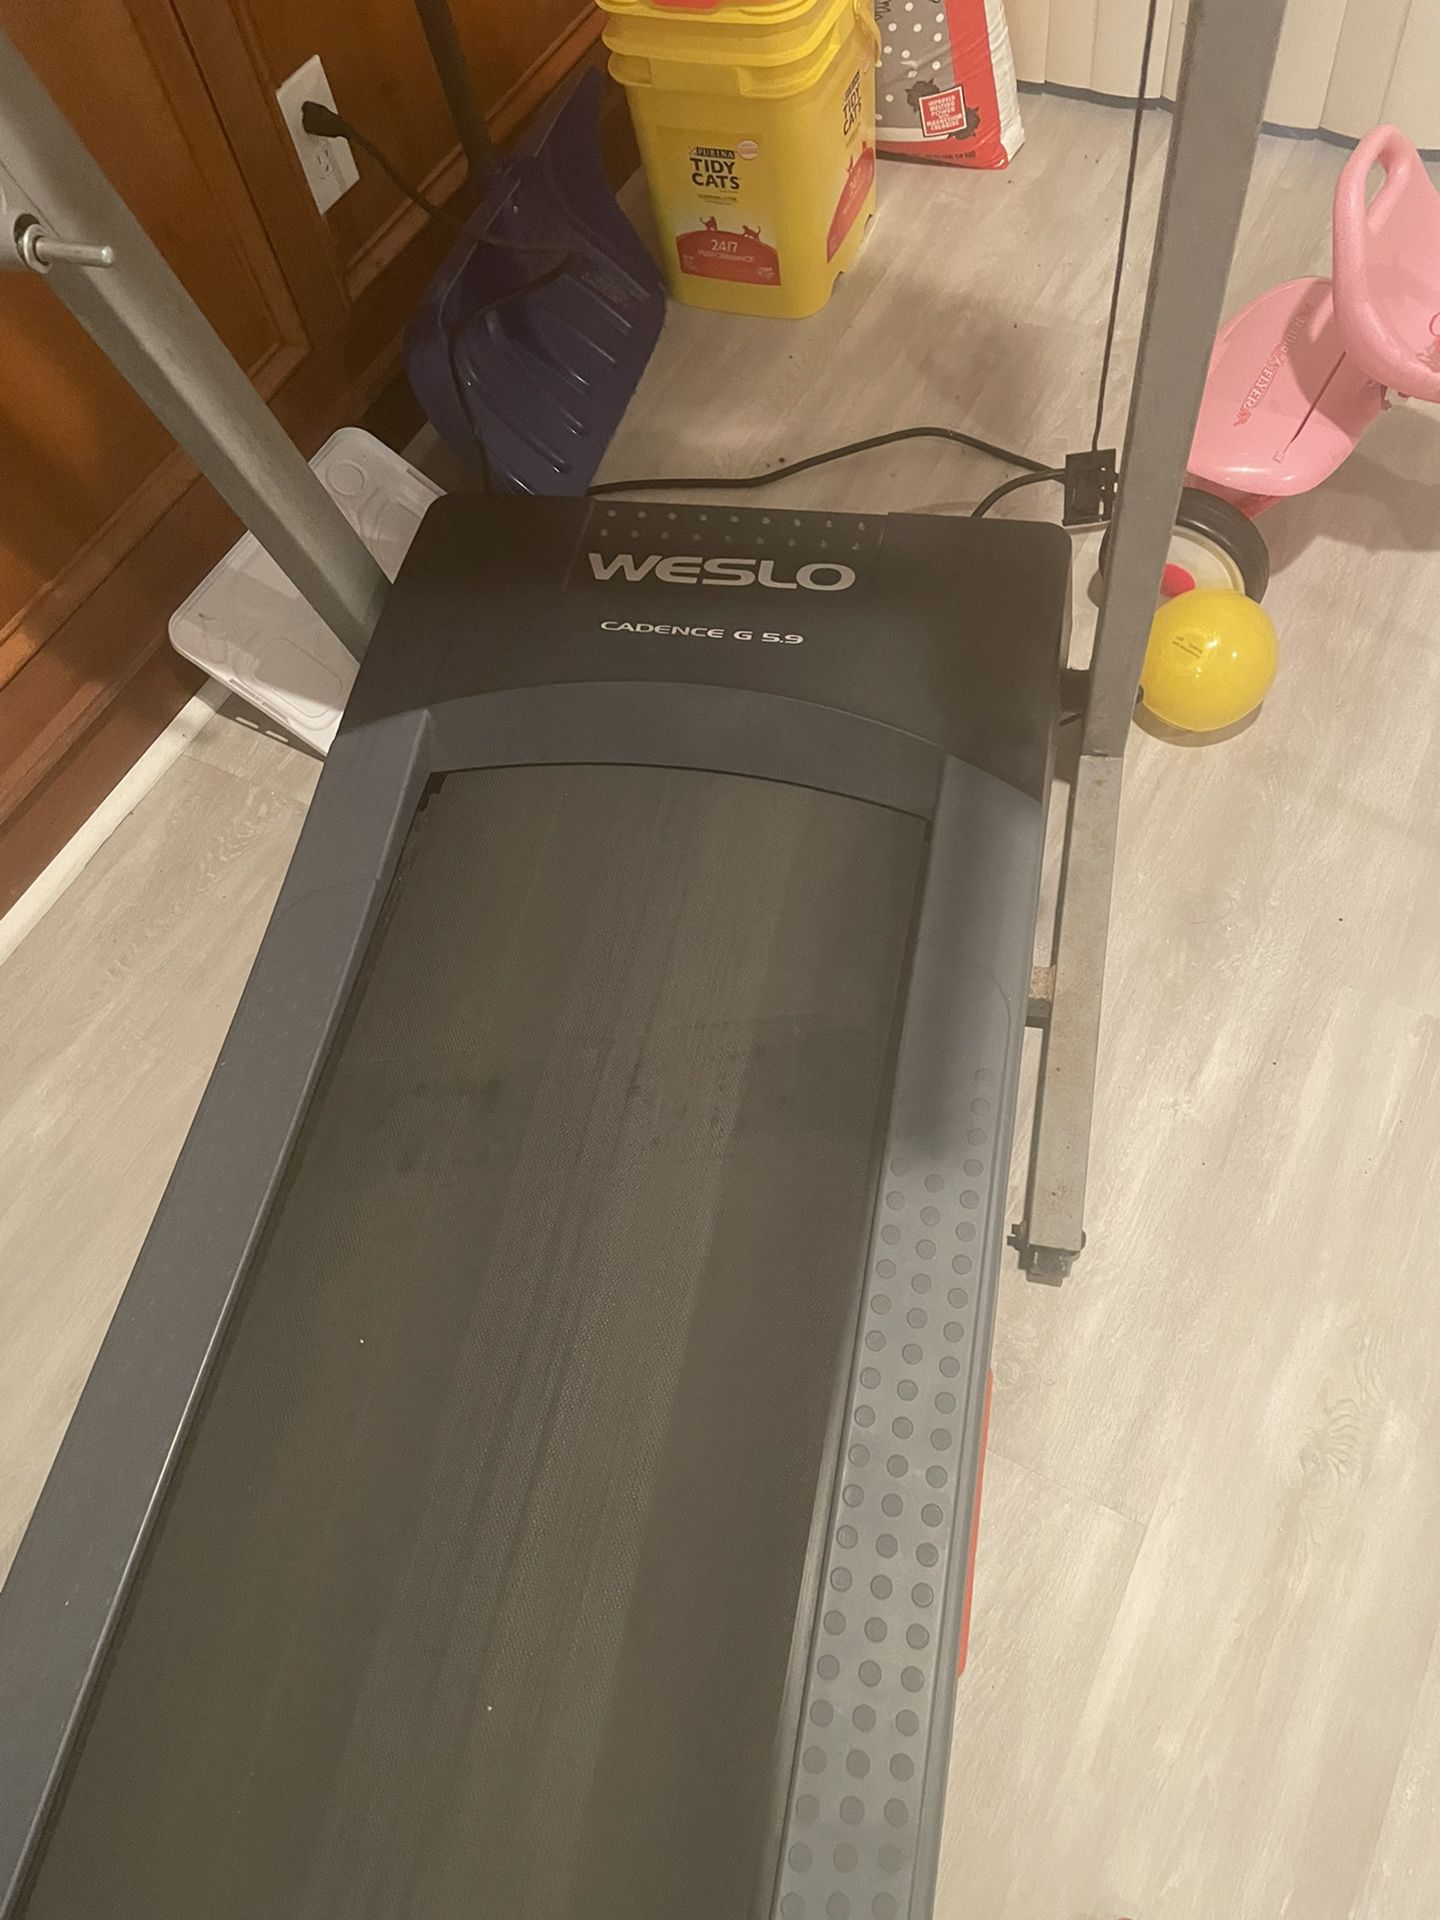 Treadmill Use 